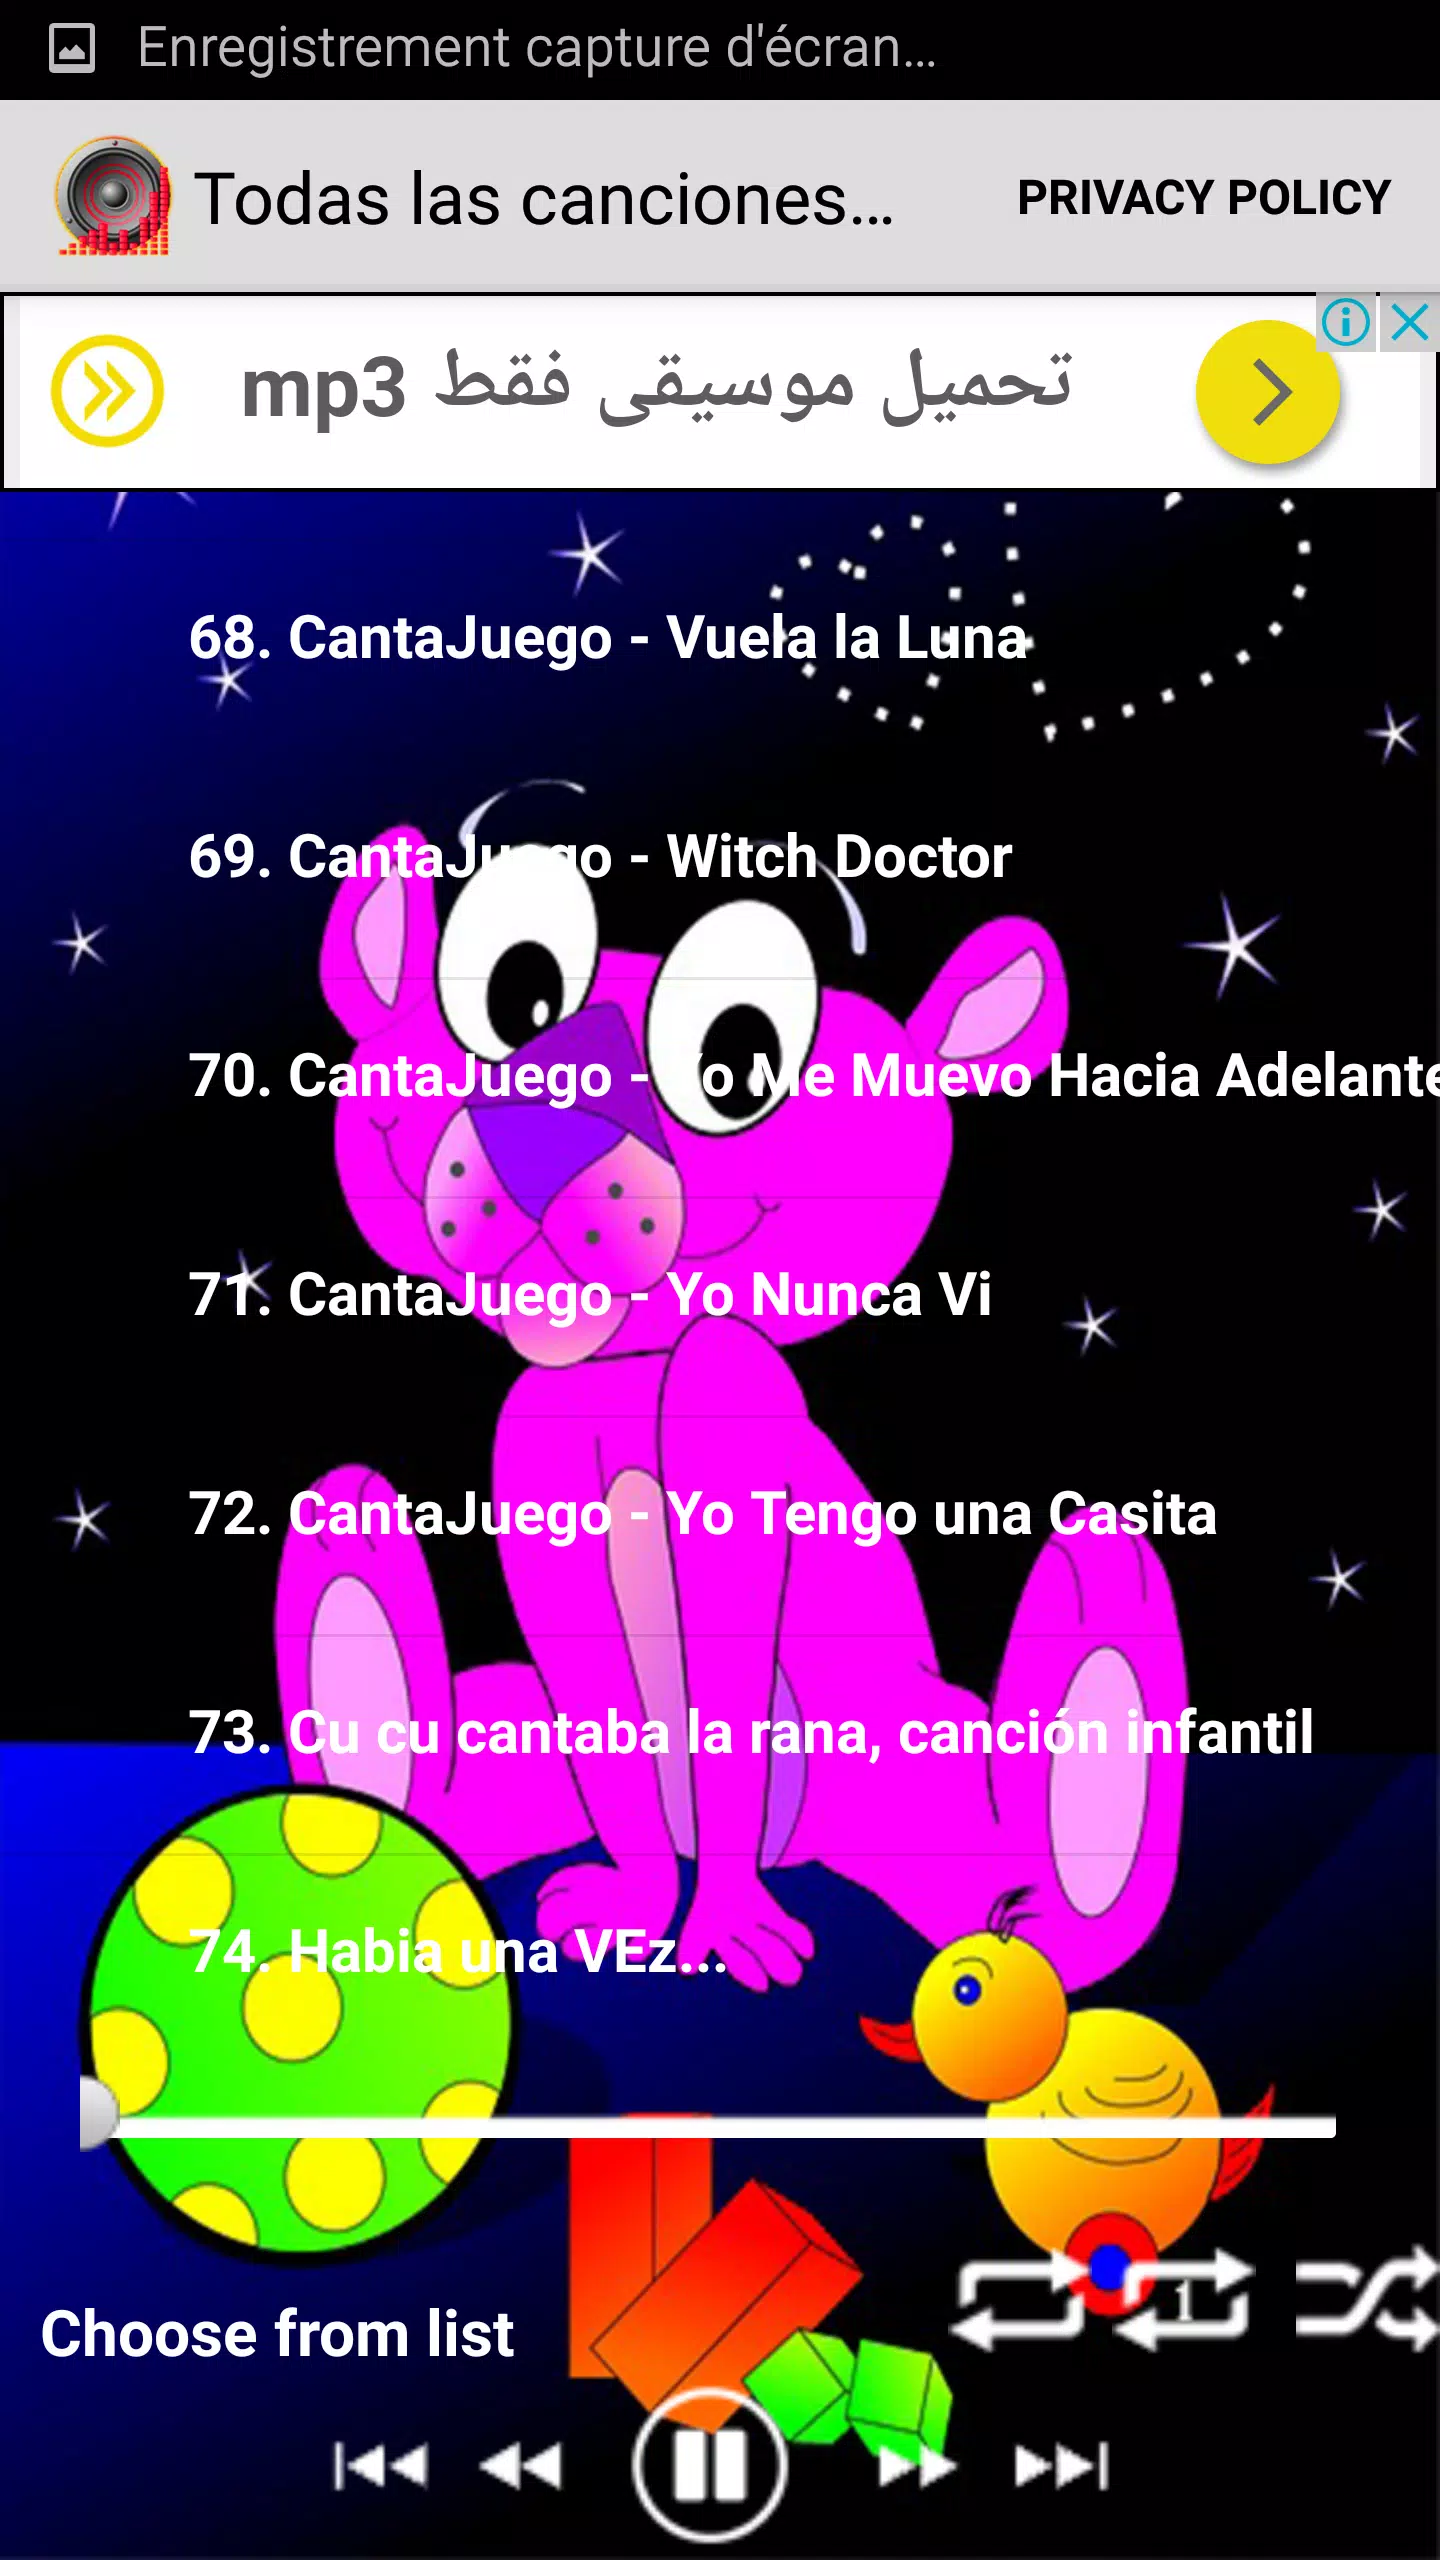 Top canciones de Cantajuegos for Android - APK Download